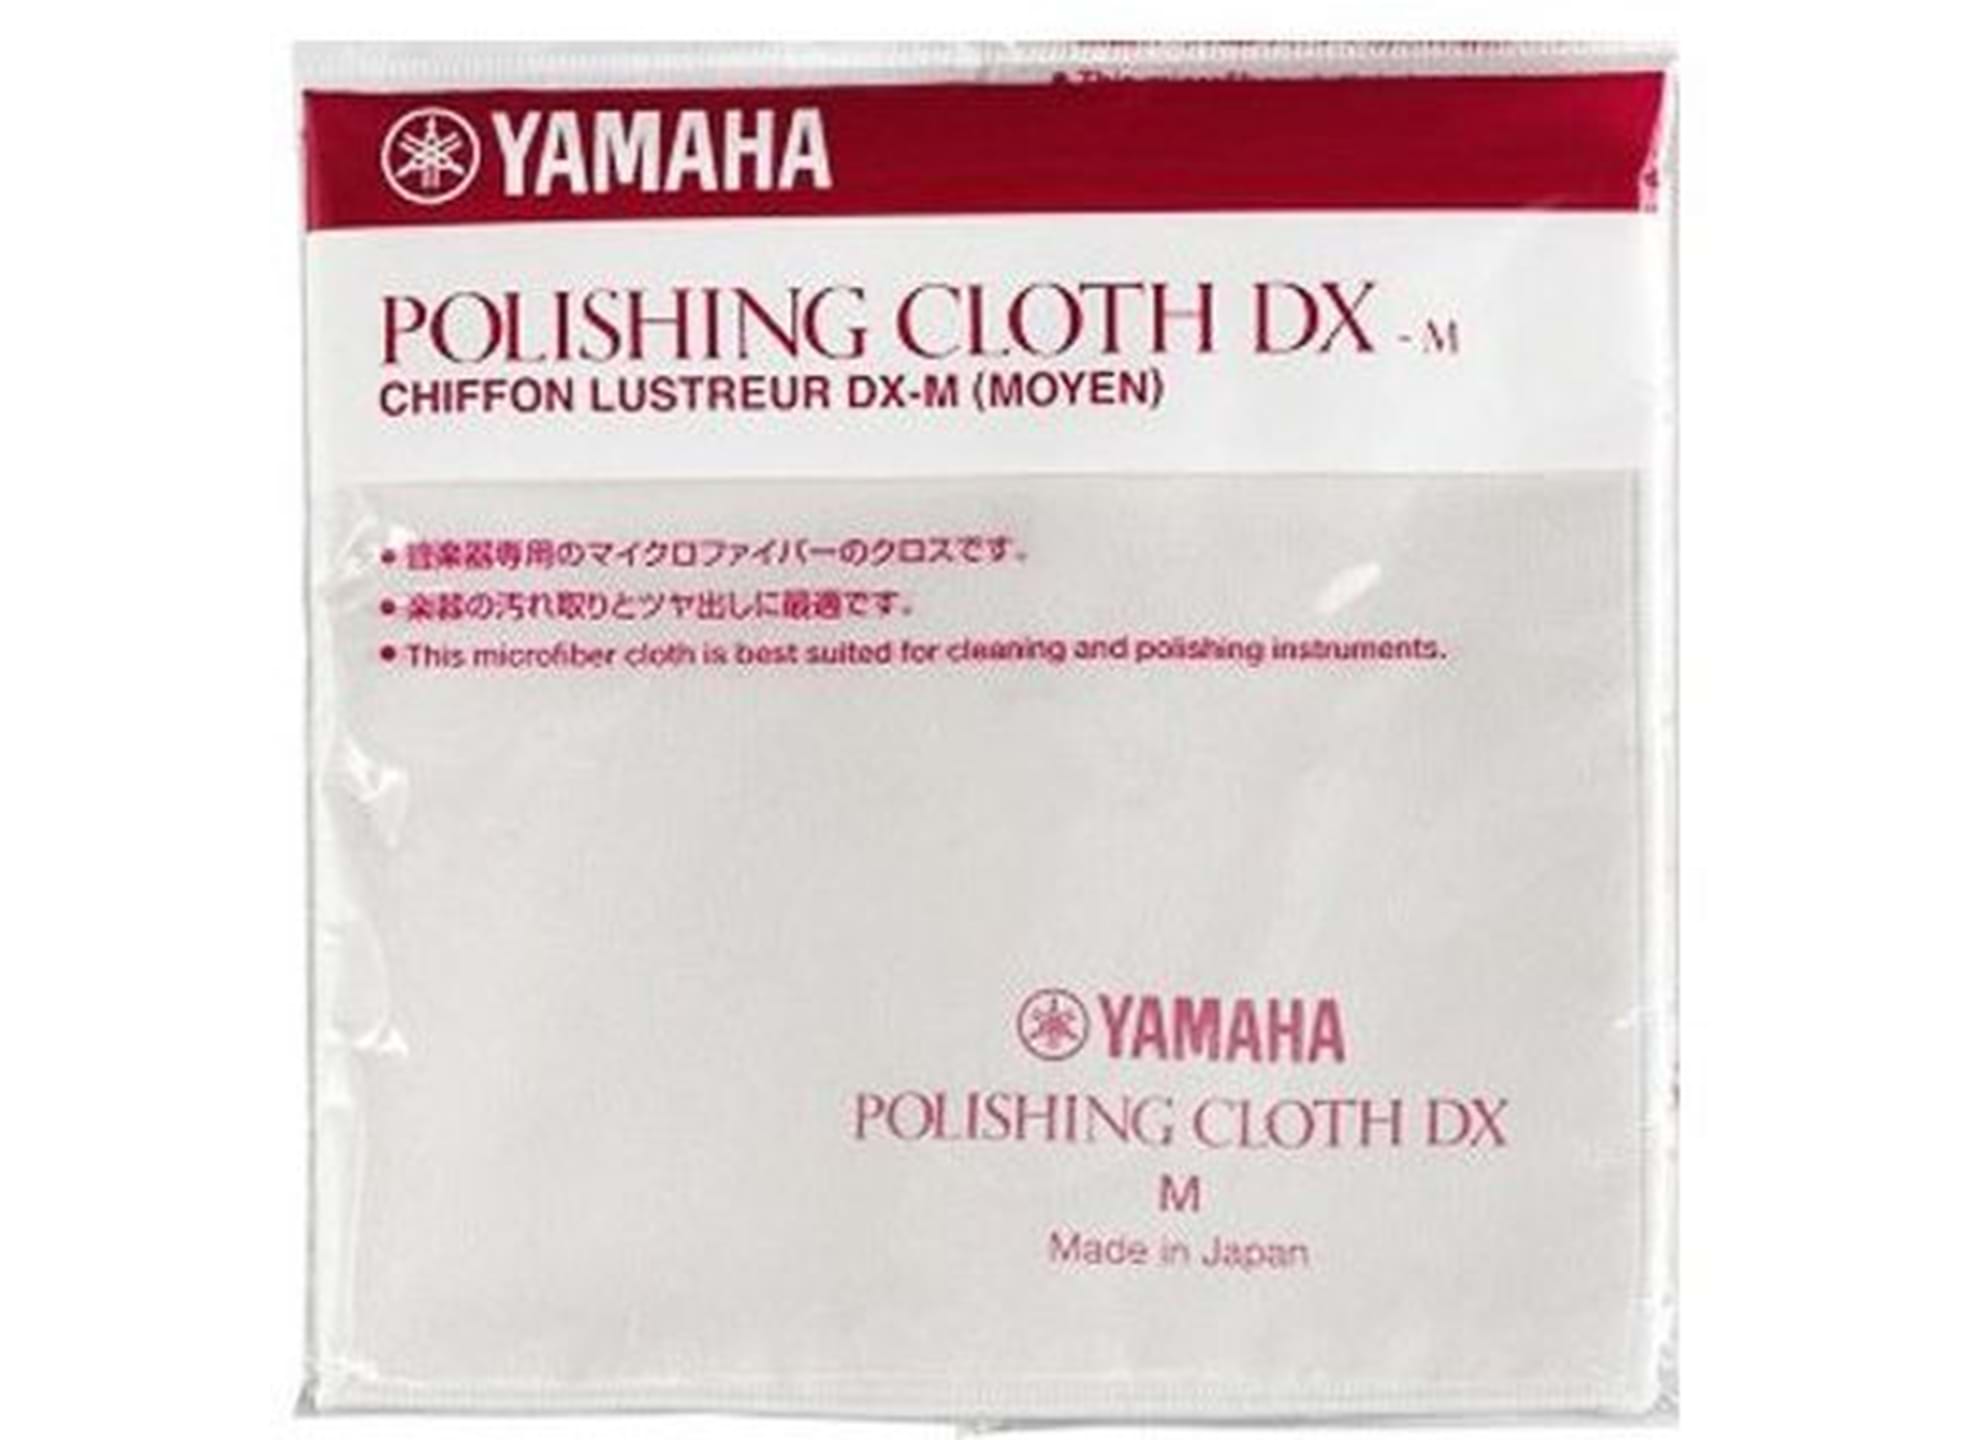 Polishing Cloth DX Medium